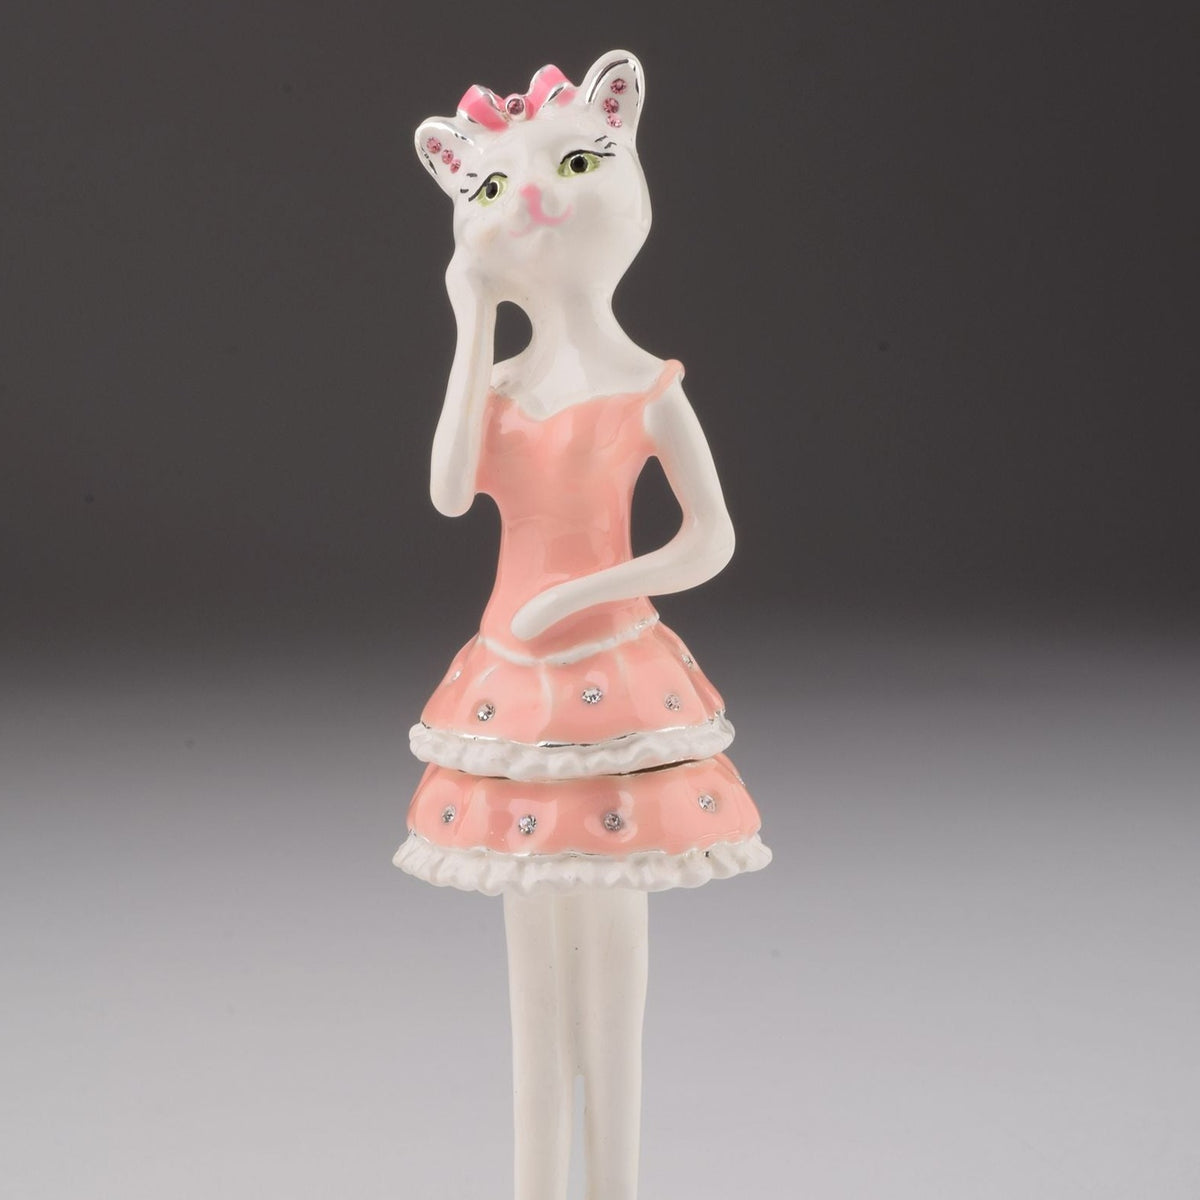 Keren Kopal Cat with Pink Dress  69.00